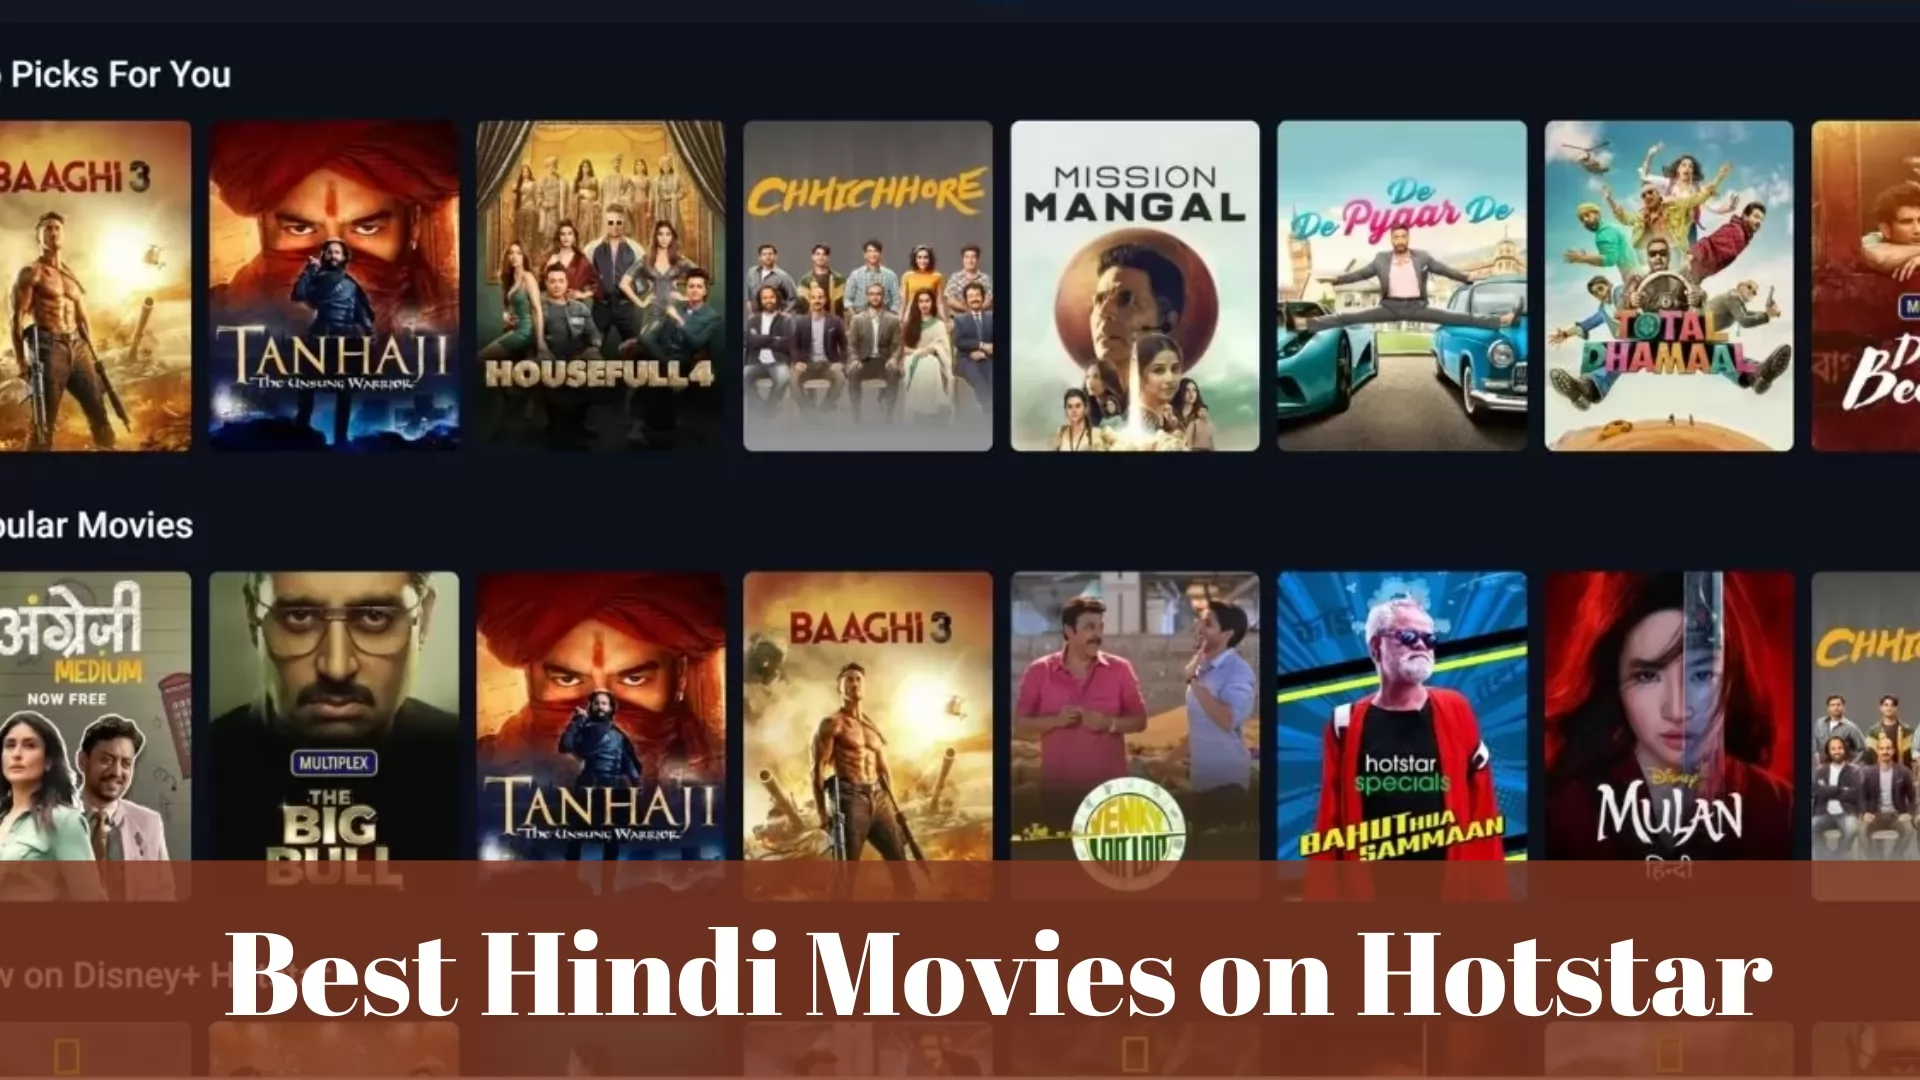 54 Best Hindi Movies on Hotstar: Latest & Popular